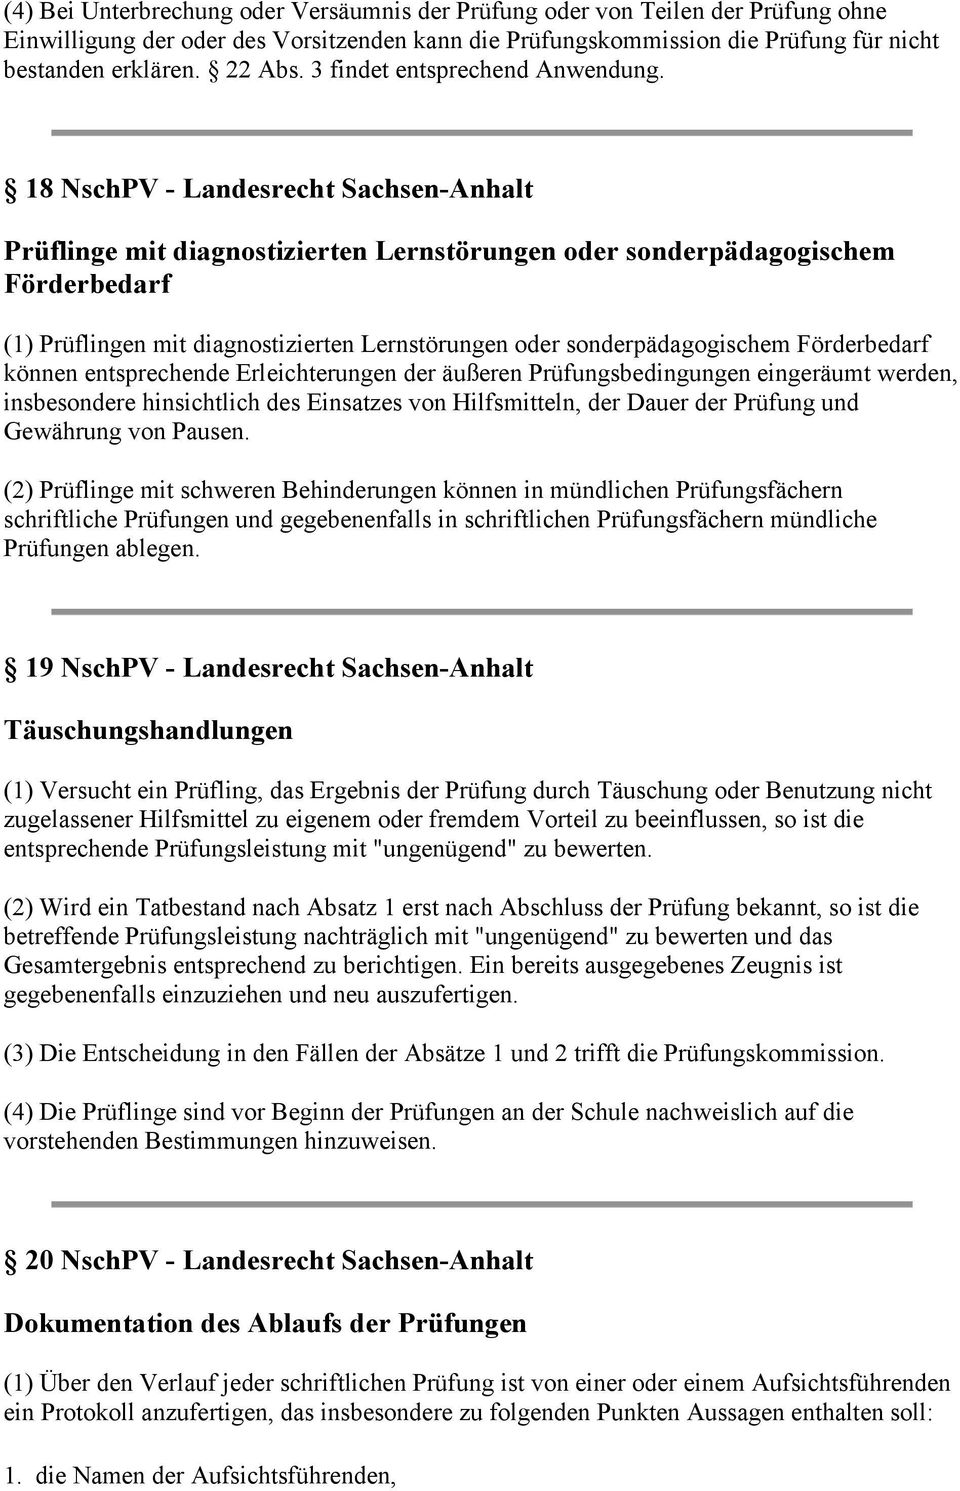 18 NschPV - Landesrecht Sachsen-Anhalt Prüflinge mit diagnostizierten Lernstörungen oder sonderpädagogischem Förderbedarf (1) Prüflingen mit diagnostizierten Lernstörungen oder sonderpädagogischem